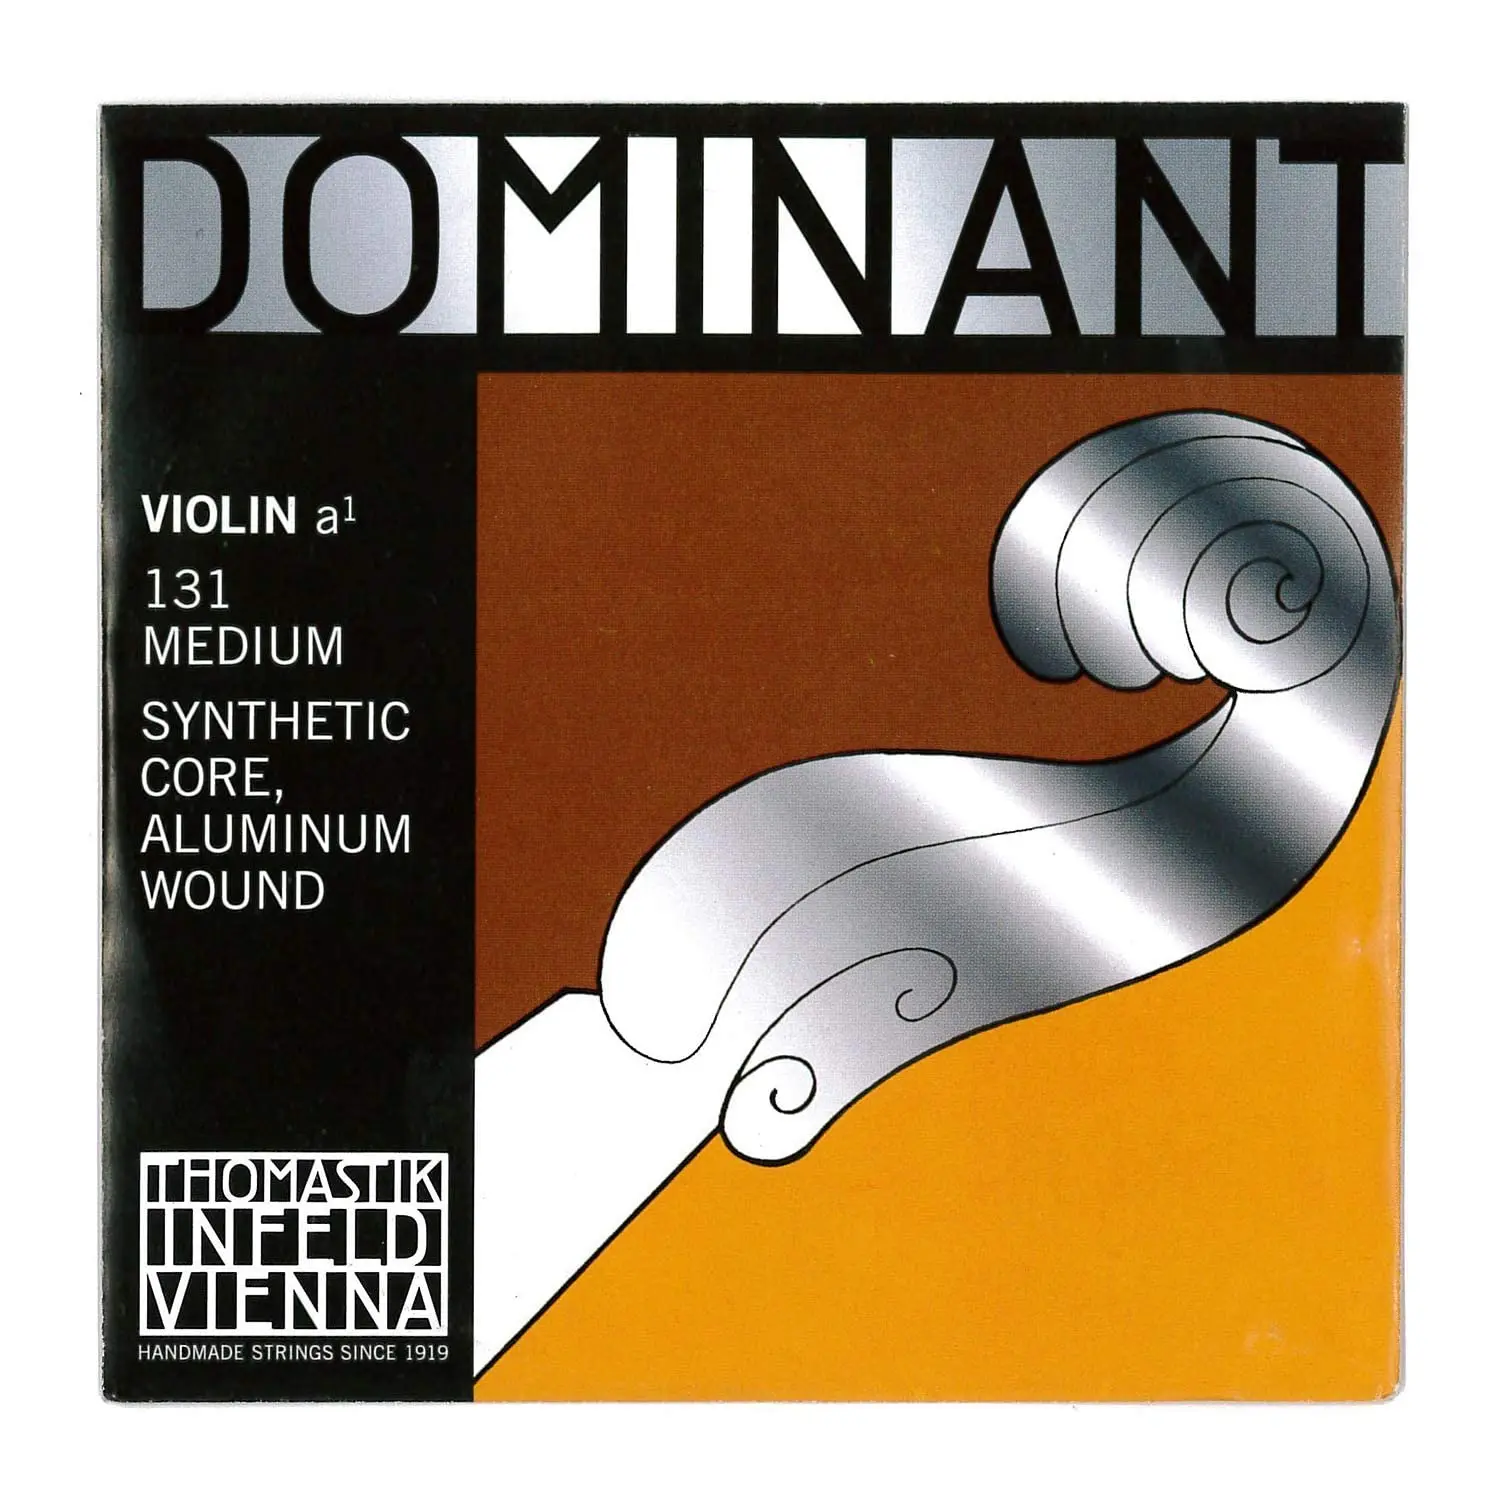 dominant violin en vendoma - Qué es un séptimo violín dominante